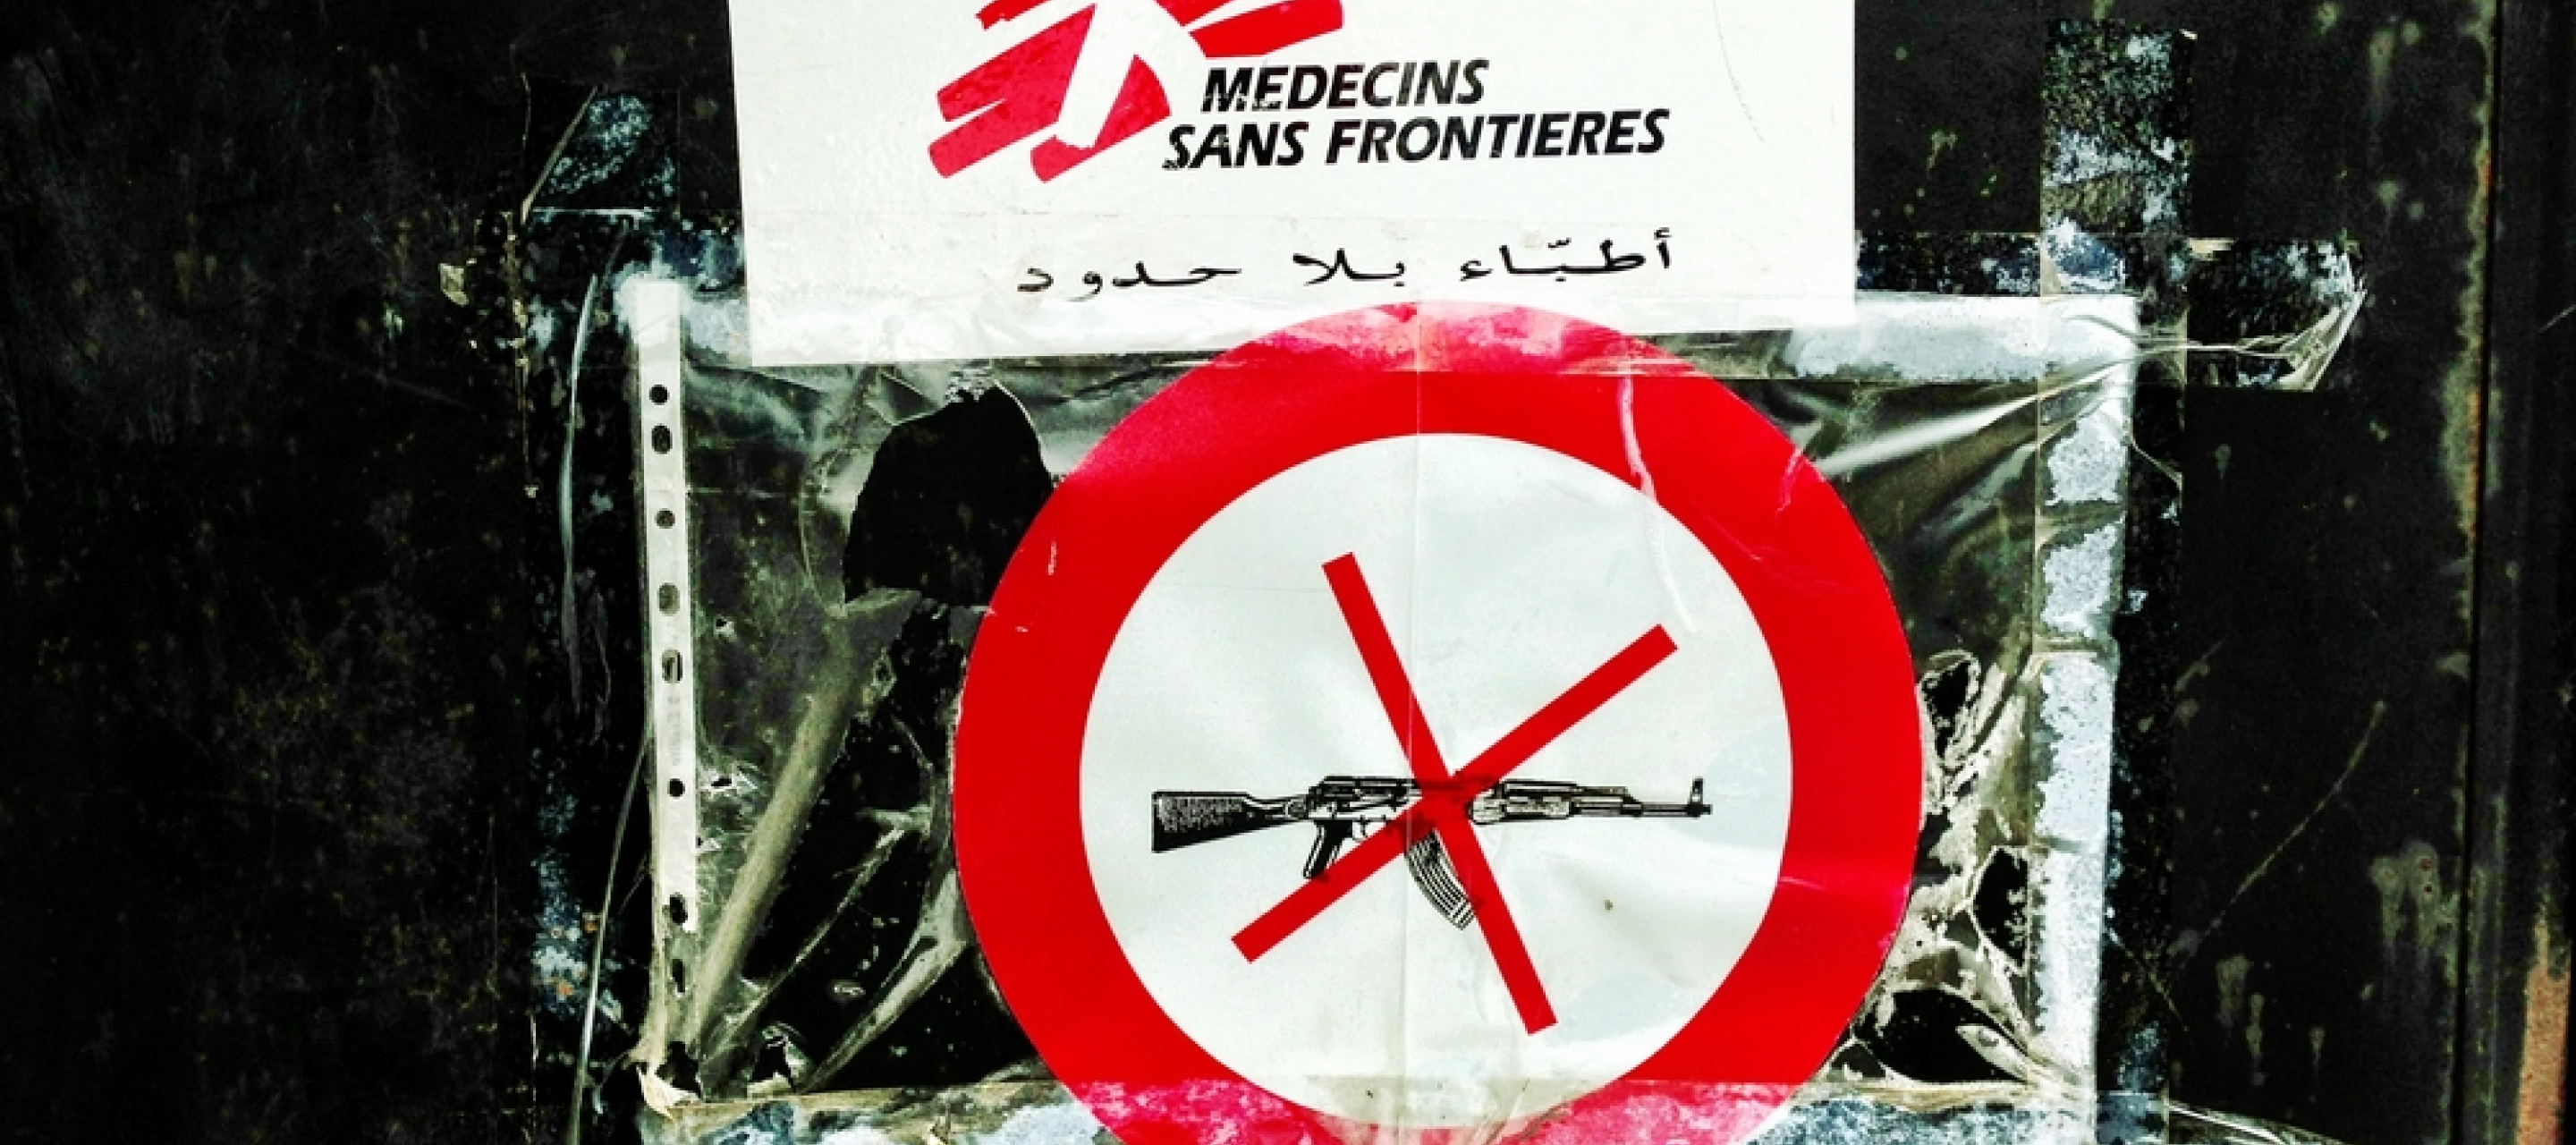 Ein Piktogramm mit einem durchgestrichenen Gewehr und einem Ärzte ohne Grenzen Schild